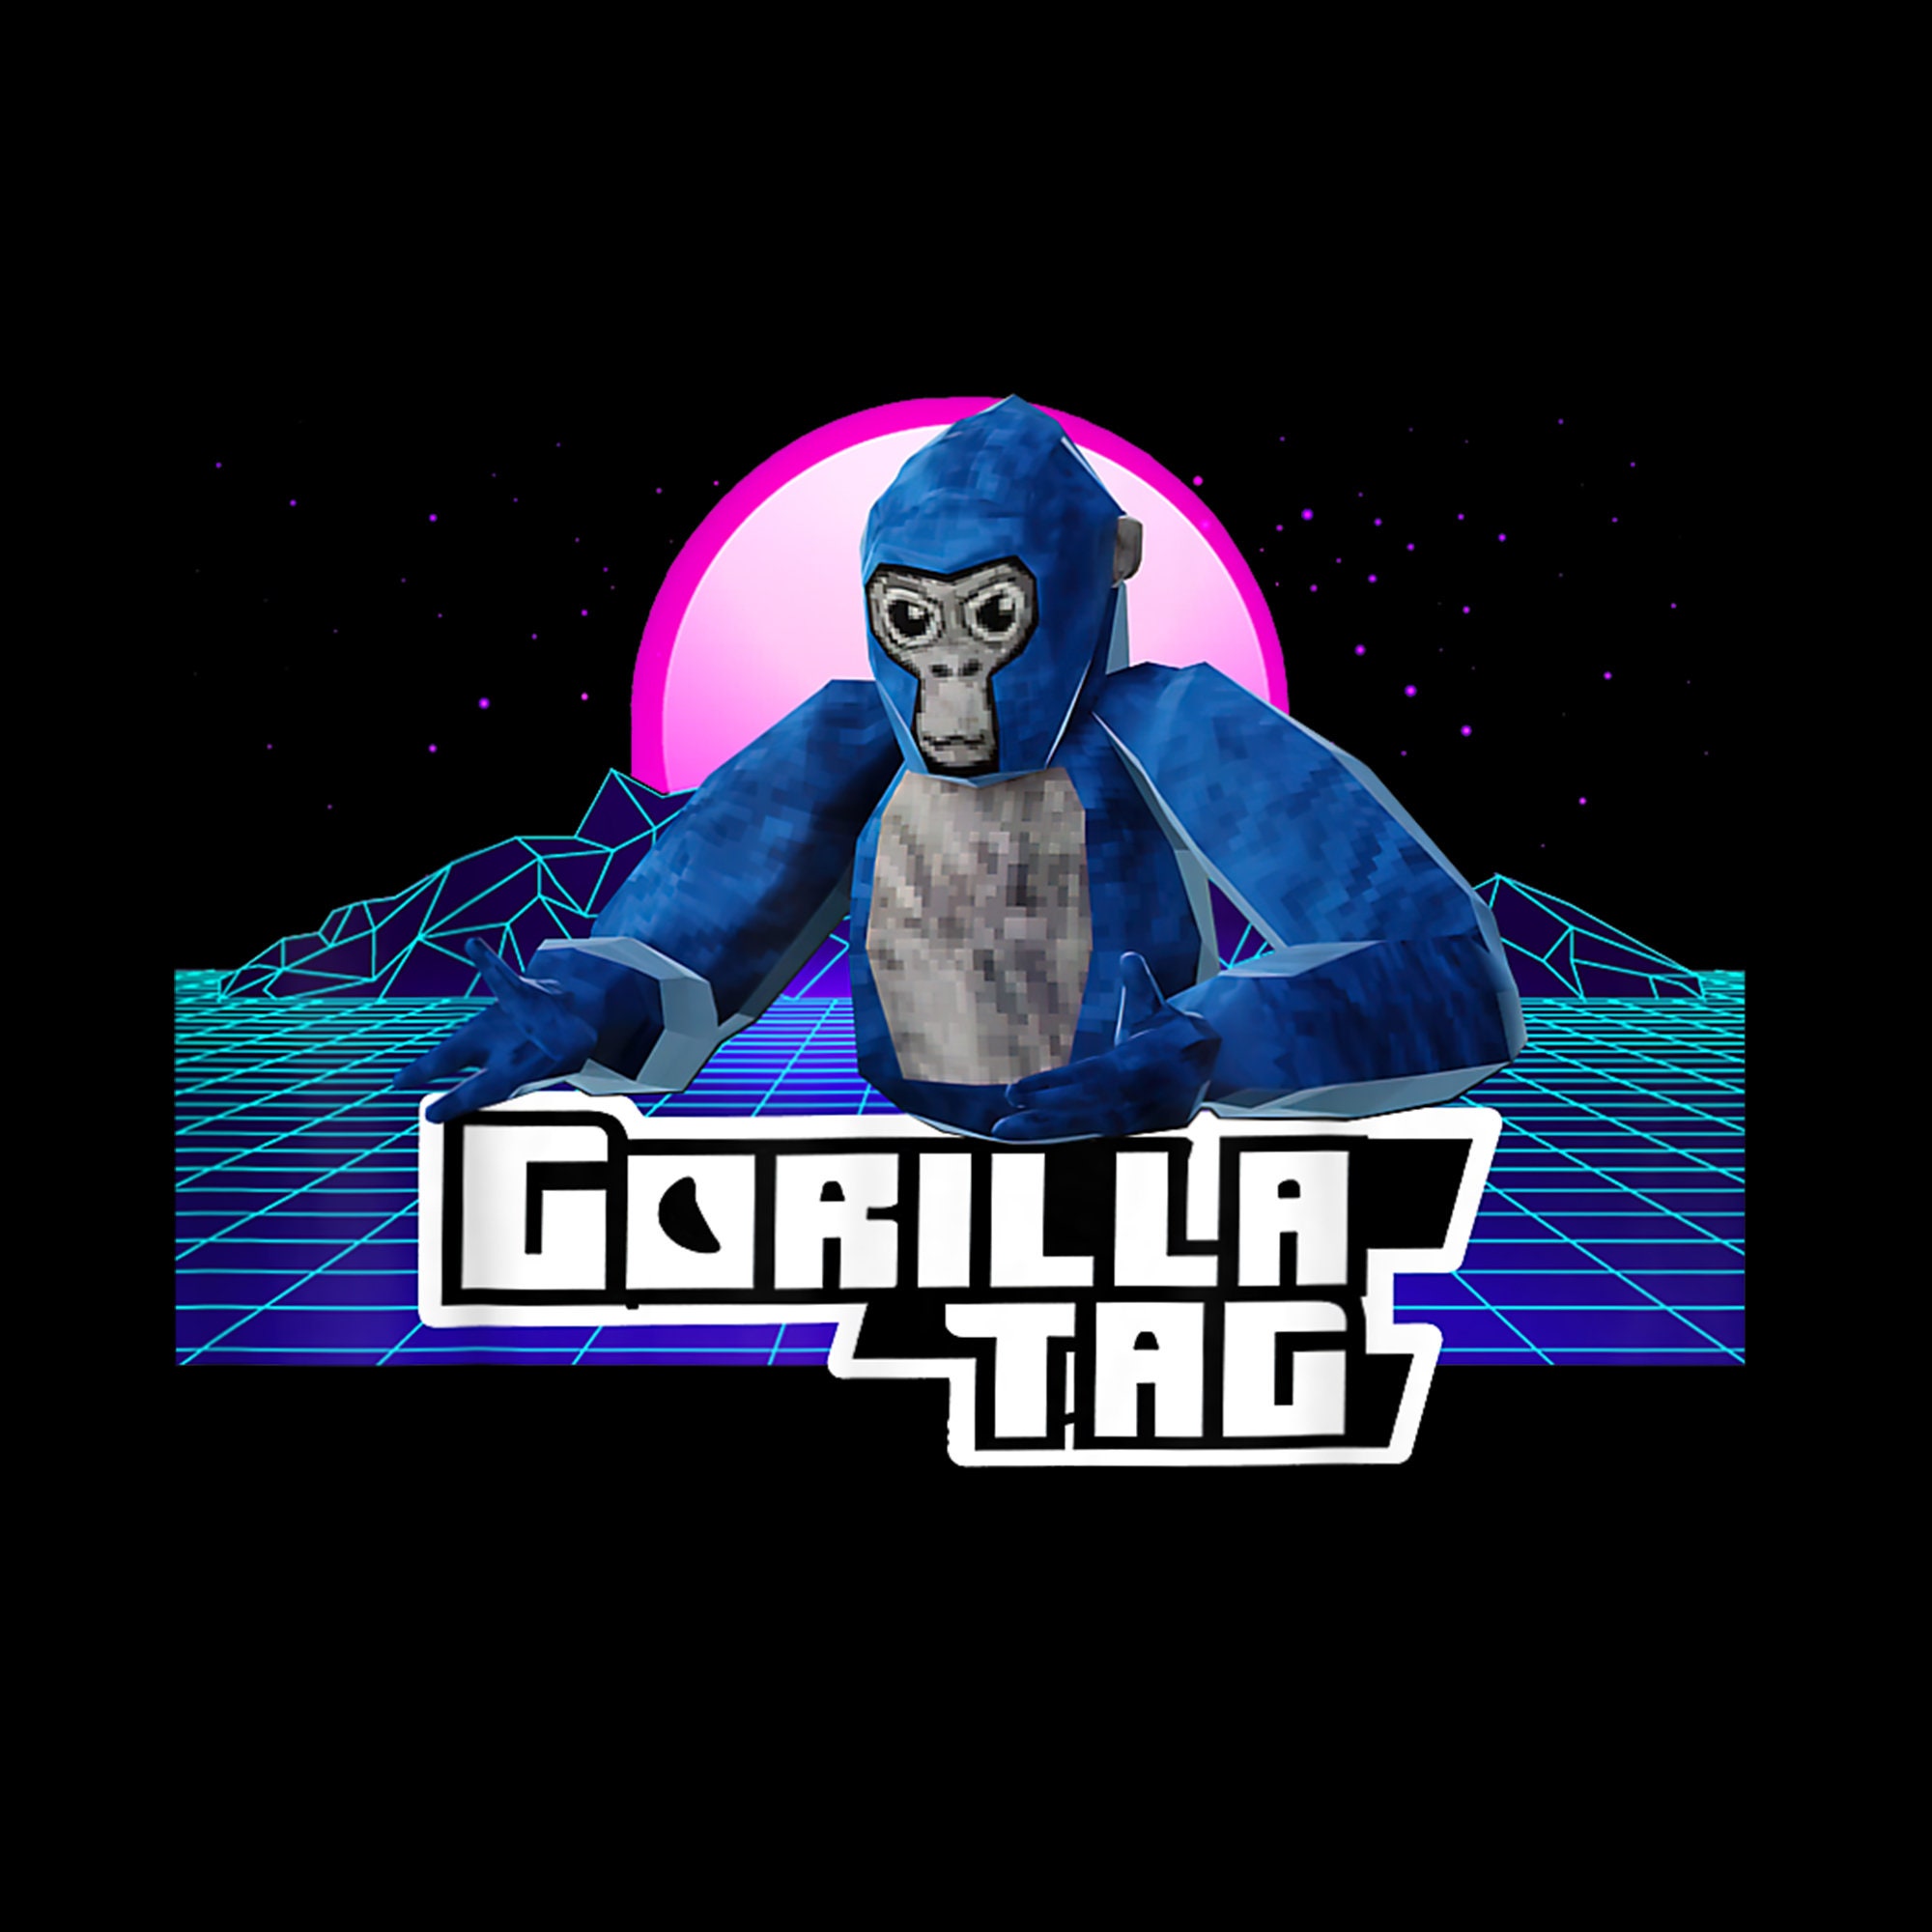 Gorilla Tag Gamer SVG PNG